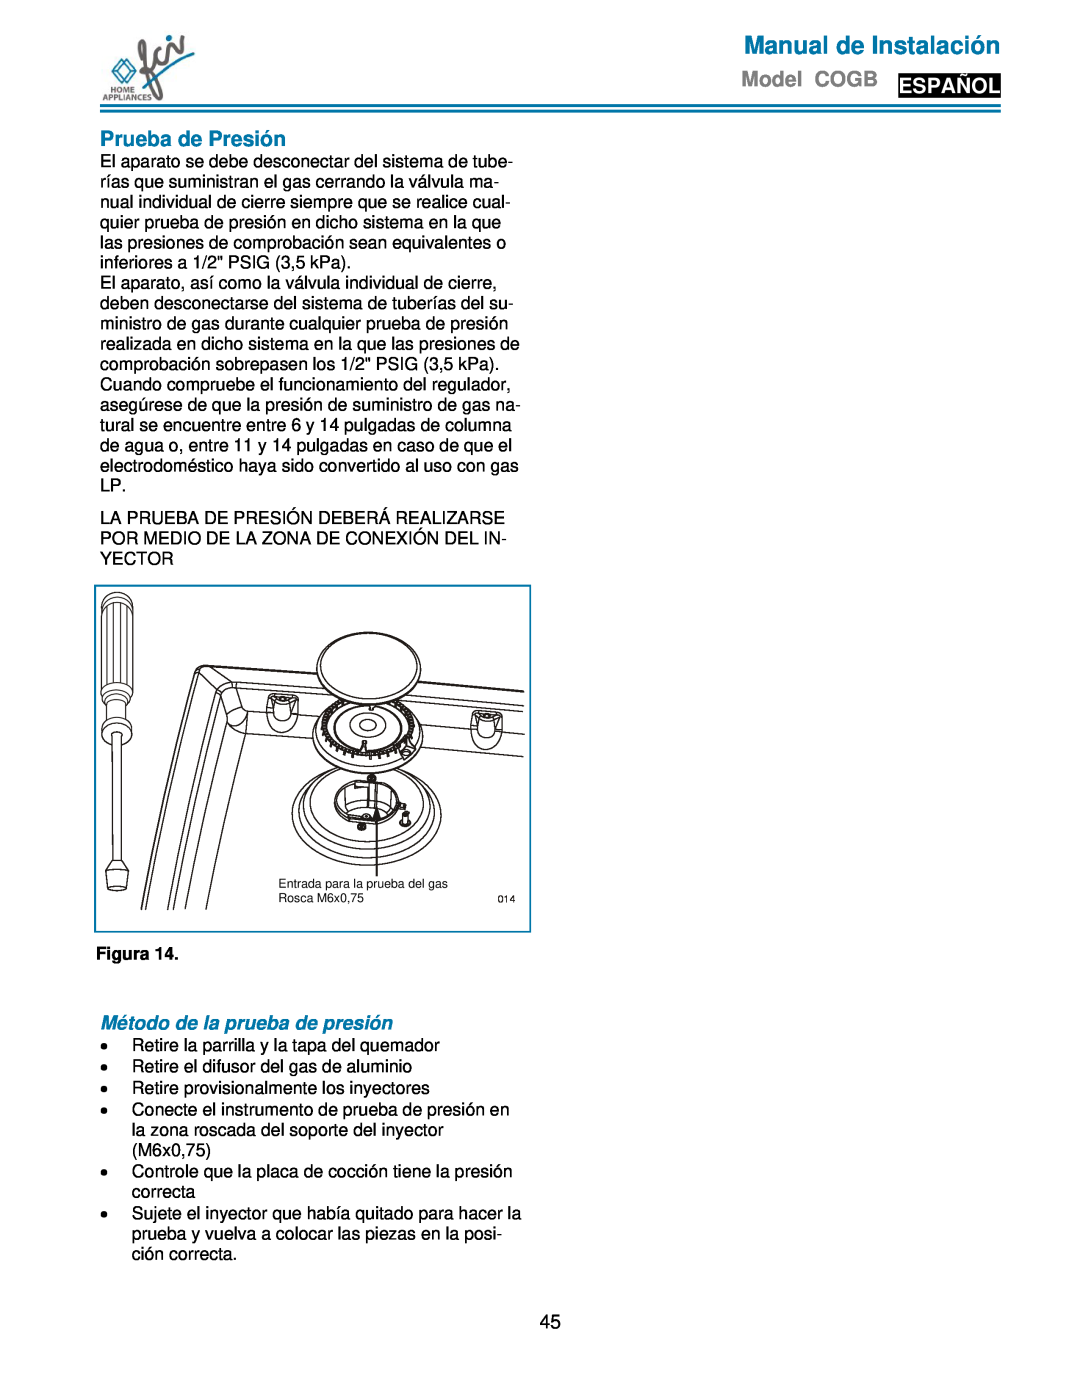 FCI Home Appliances COGB33061/WH Prueba de Presión, Método de la prueba de presión, Manual de Instalación, Figura 